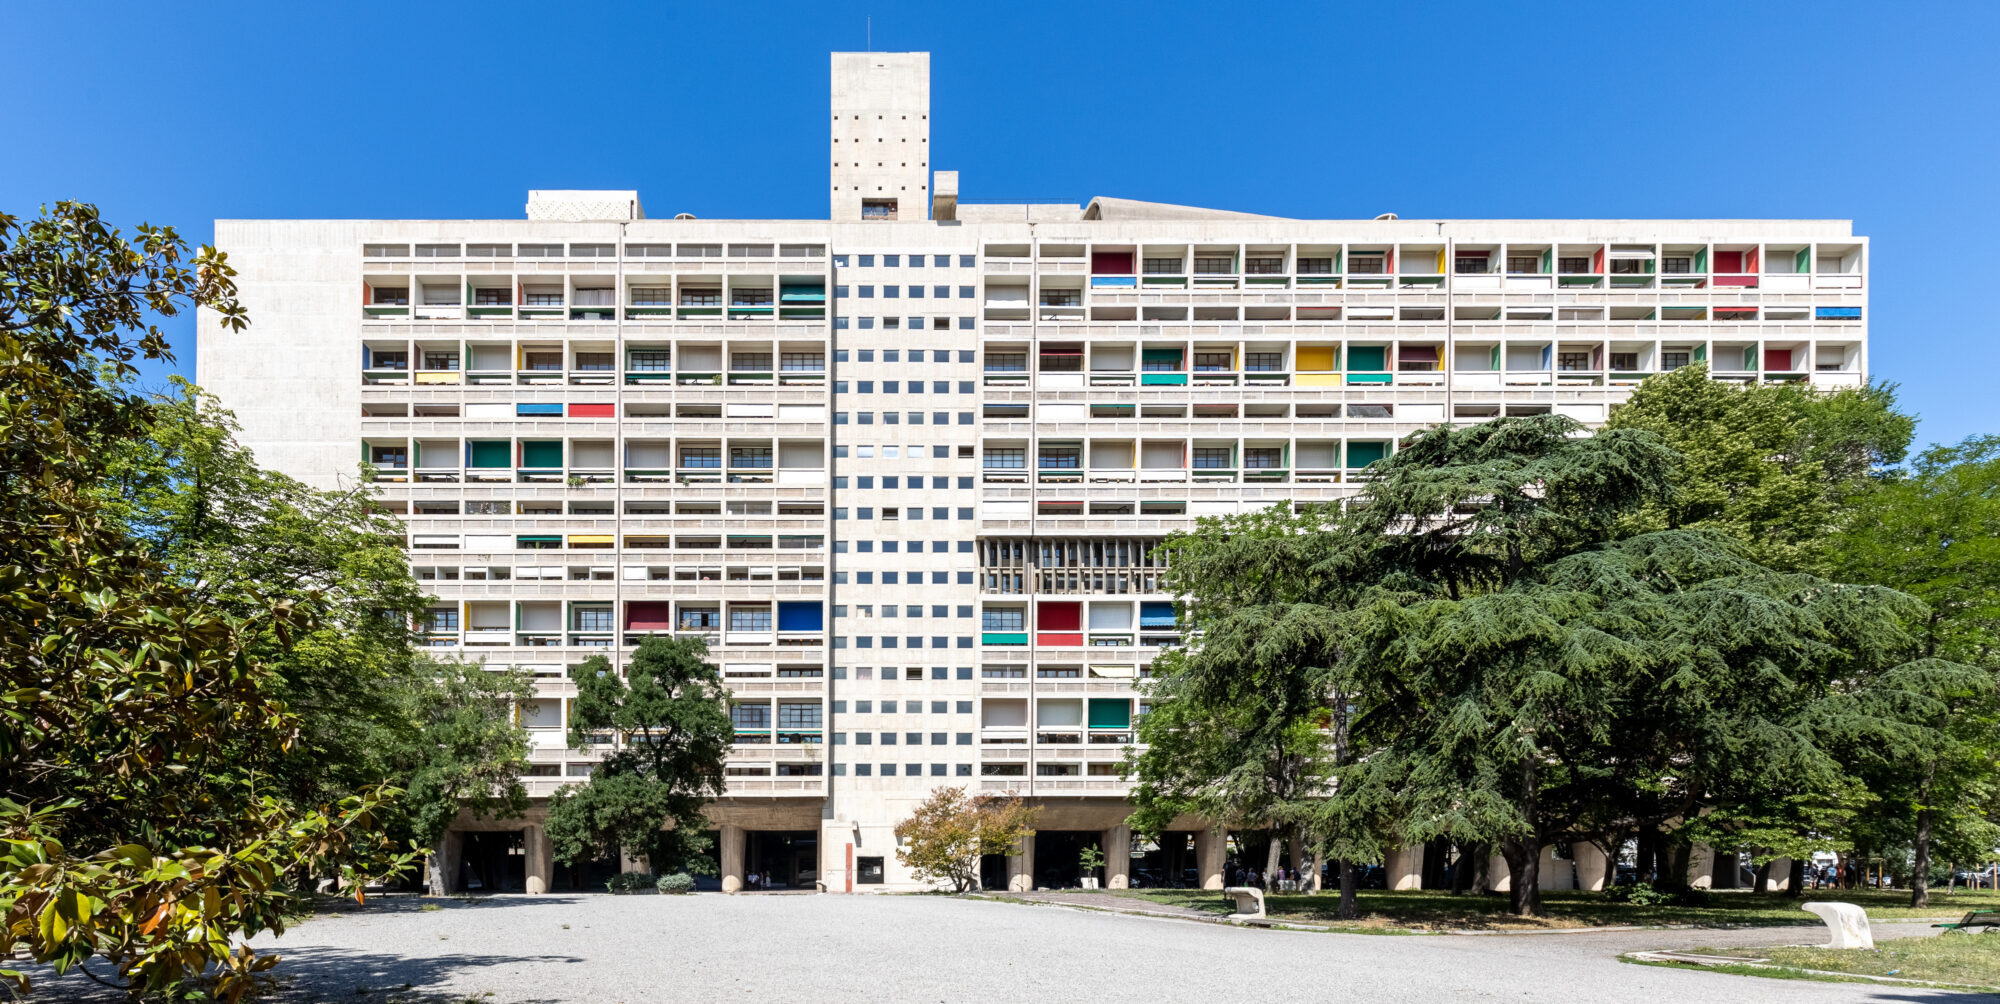 photographe d'architecture, vue d'ensemble de la cité radieuse de Le Corbusier par le photographe Christophe Levet